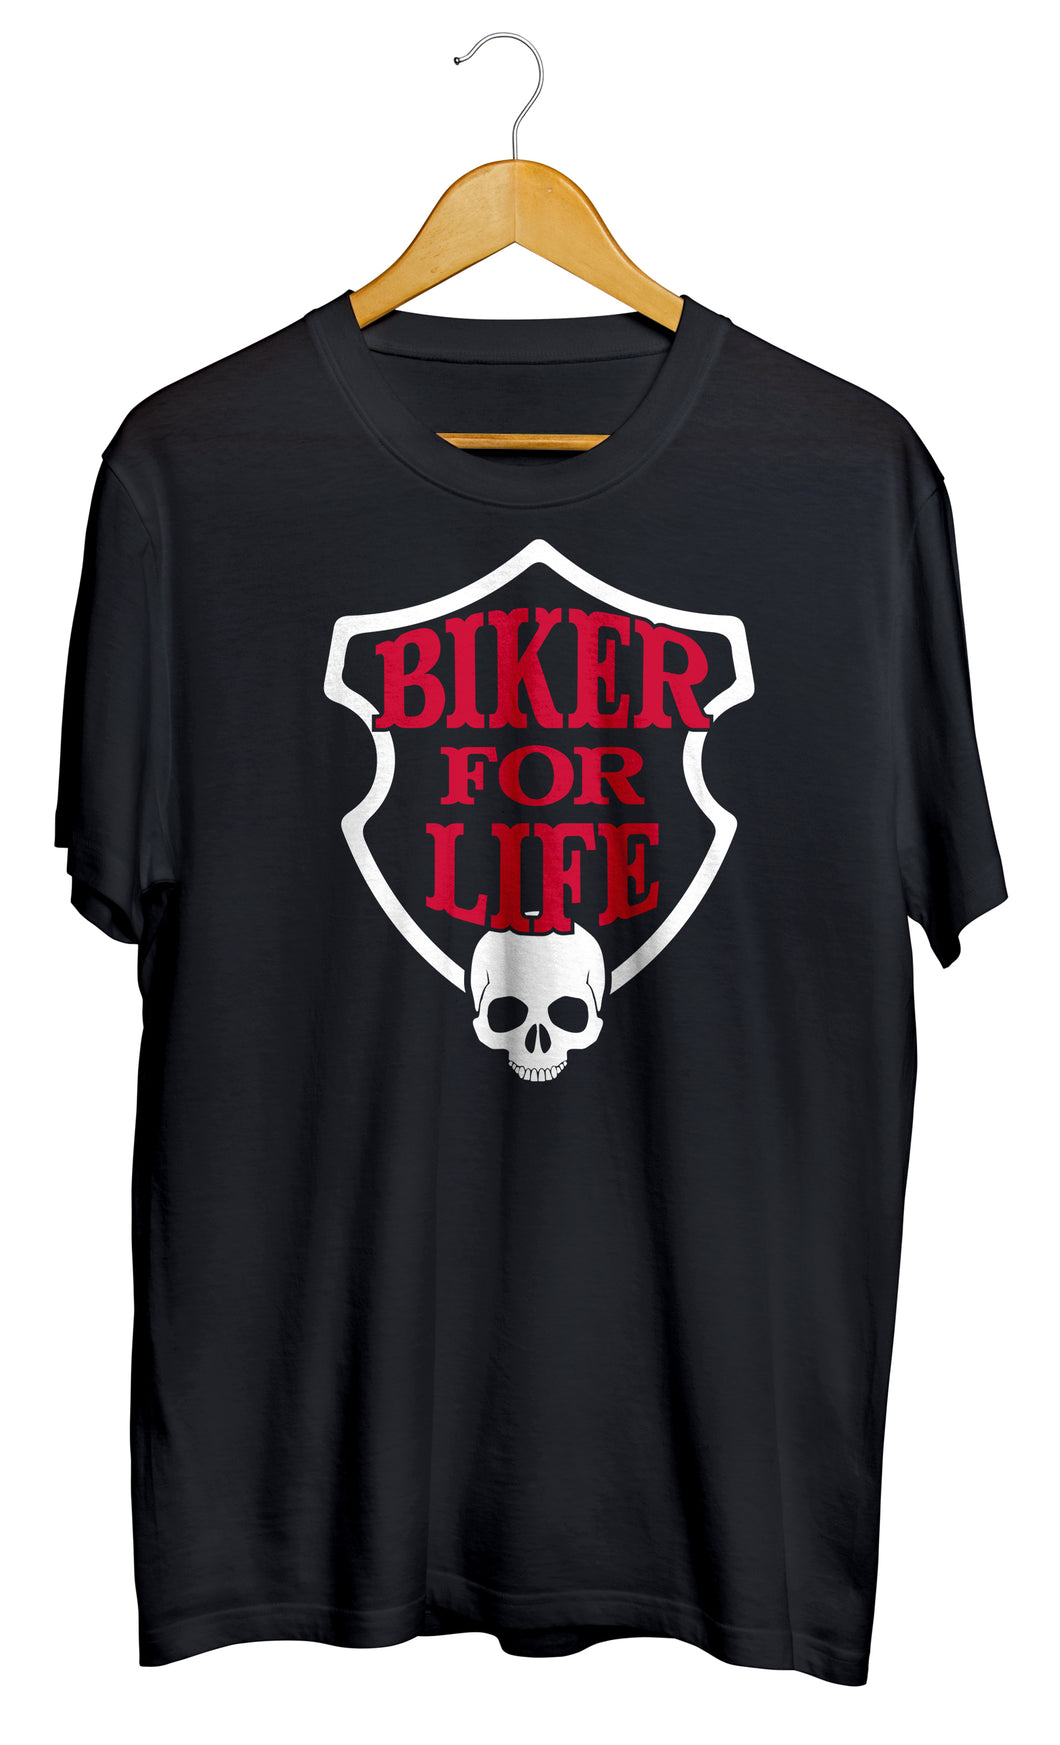 T-shirt biker for life moto motard so custom